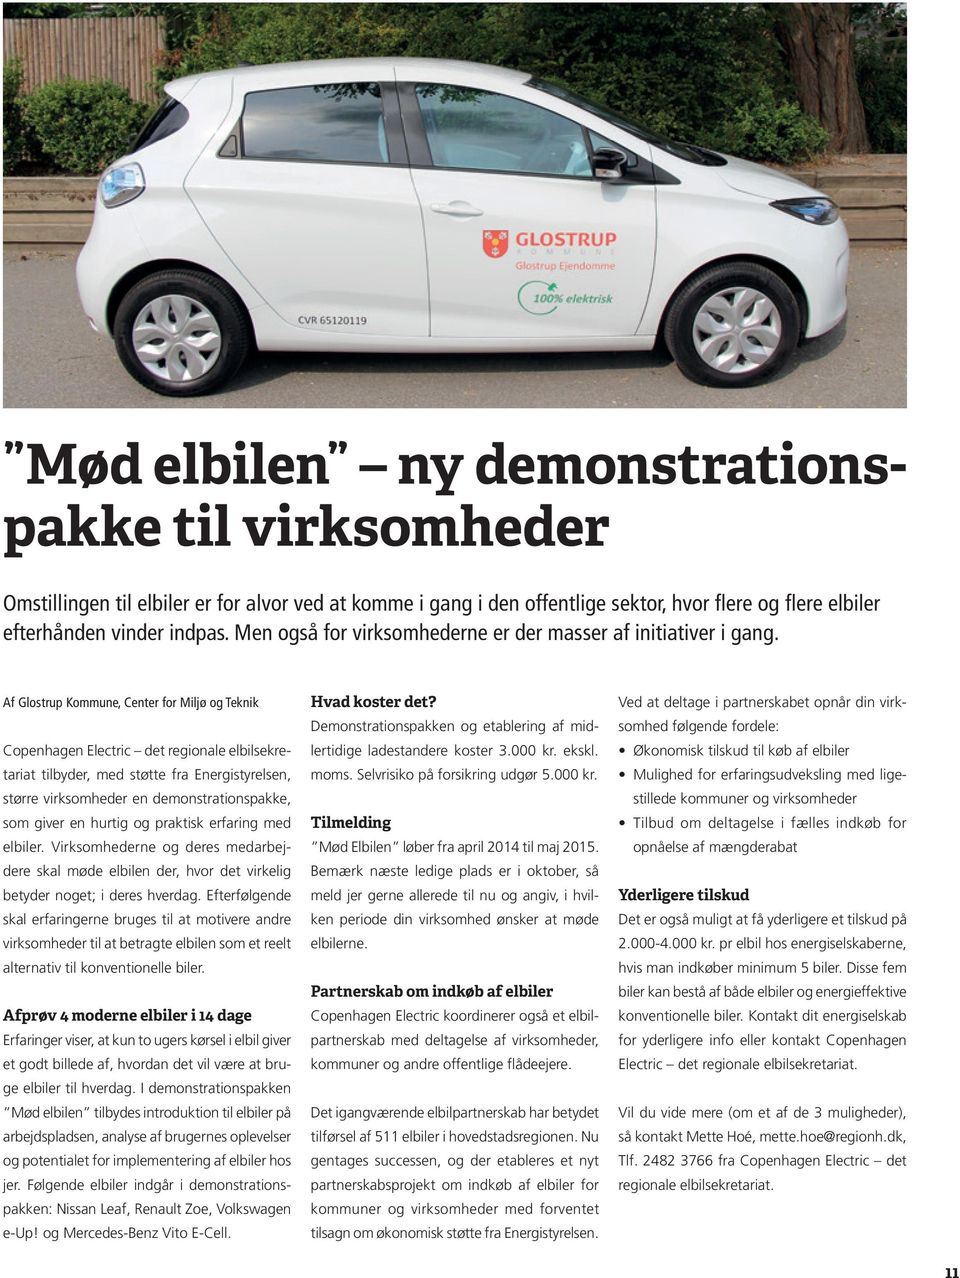 Af Glostrup Kommune, Center for Miljø og Teknik Copenhagen Electric det regionale elbilsekretariat tilbyder, med støtte fra Energistyrelsen, større virksomheder en demonstrationspakke, som giver en